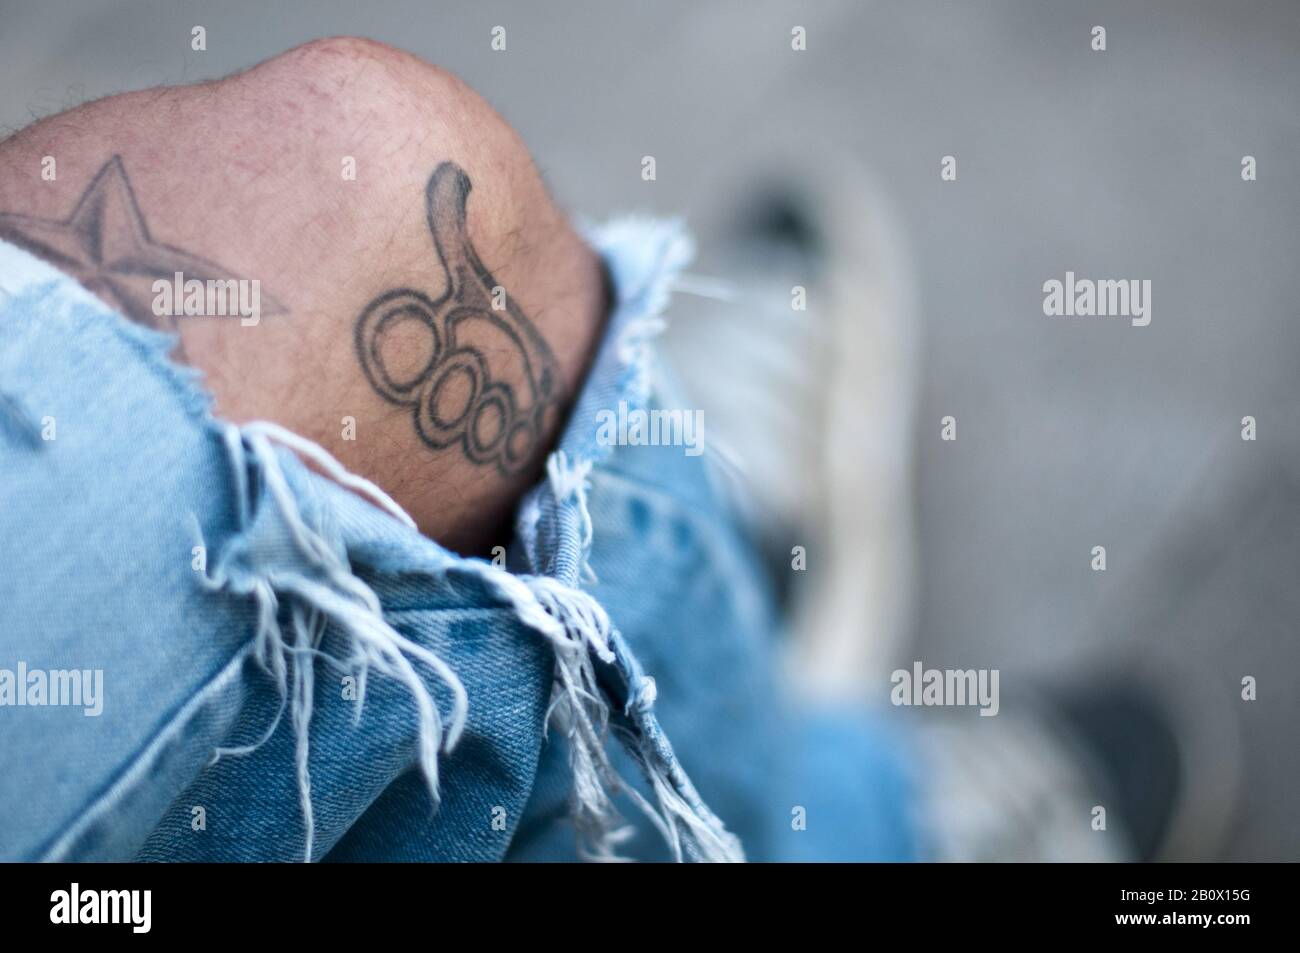 Tattoos On Leg Immagini E Fotos Stock Alamy